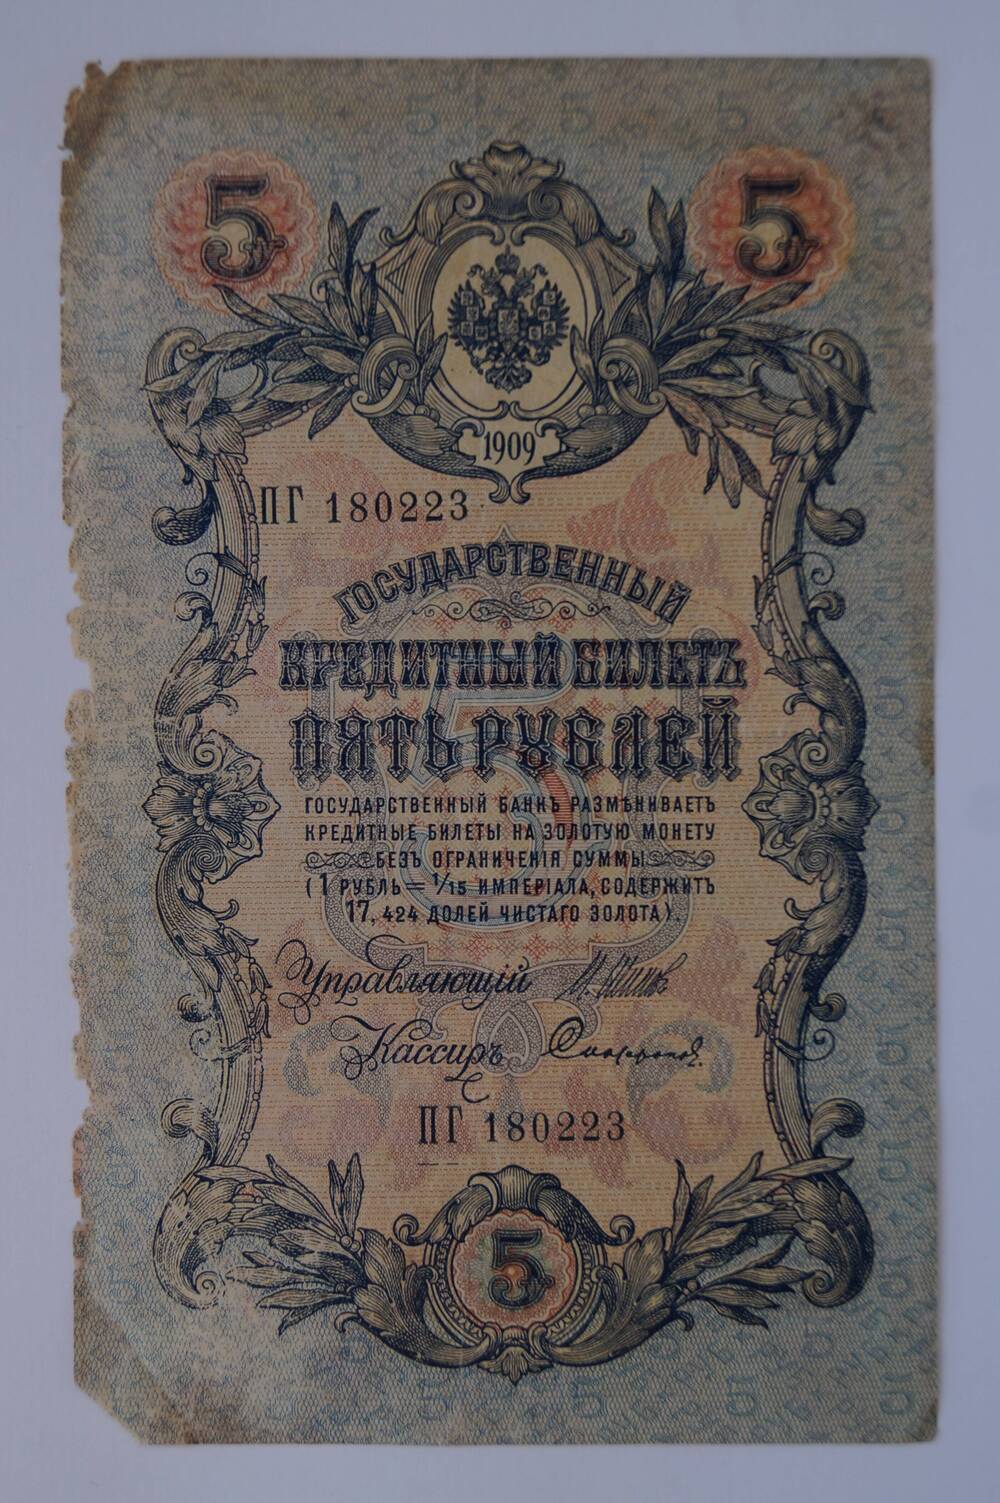 Государственный кредитный билет номиналом 5 рублей образца 1909 г. (ПГ 180223)